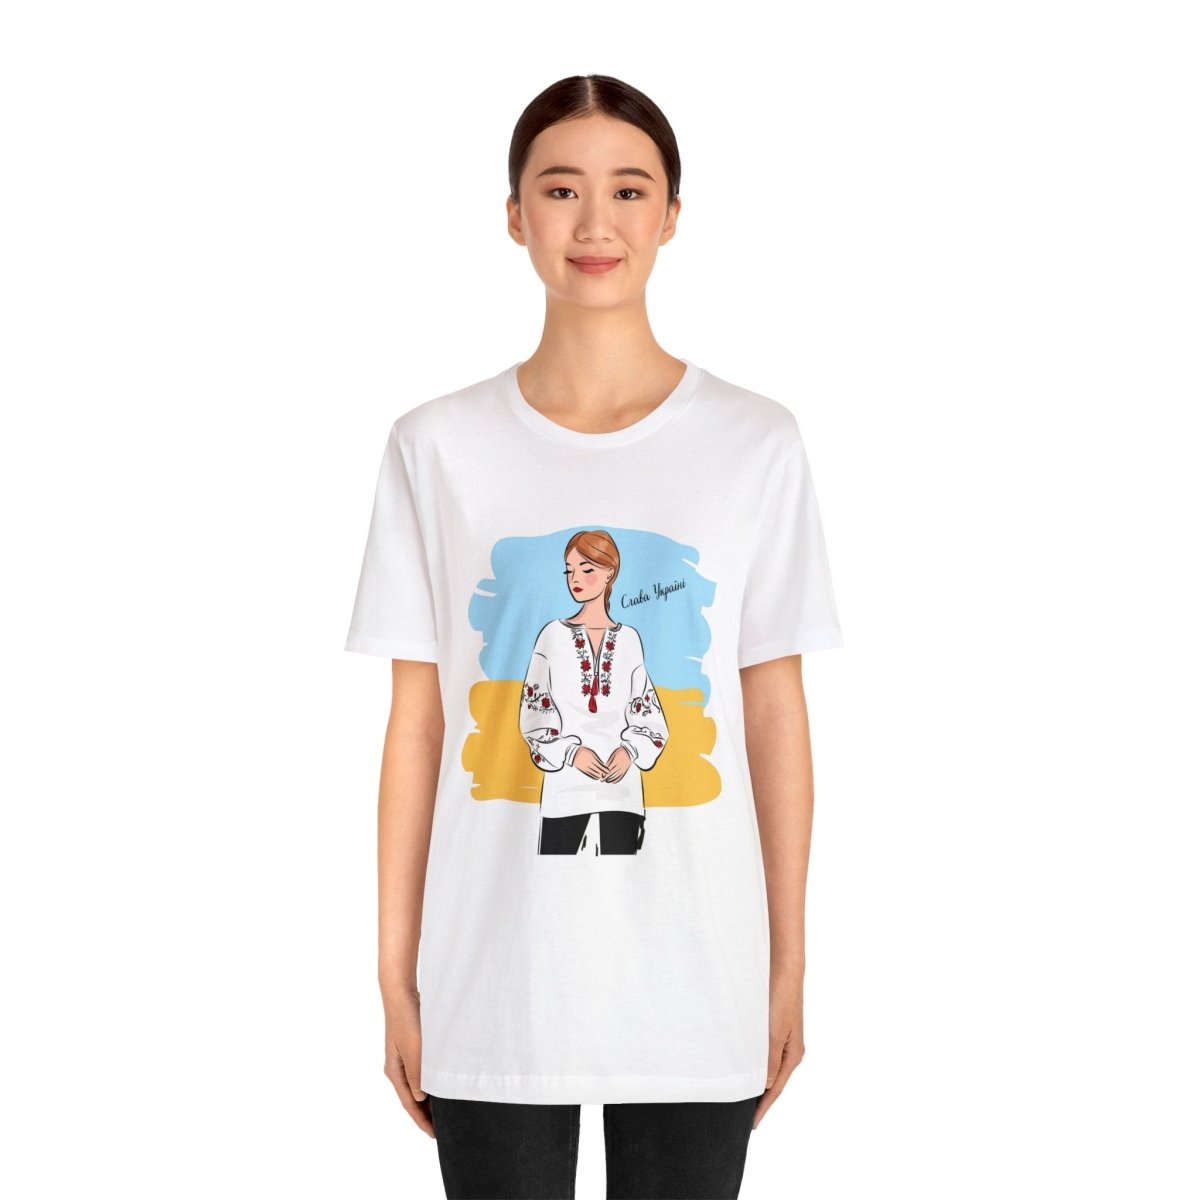 Anastasiia Unisex T-Shirt - Cultics